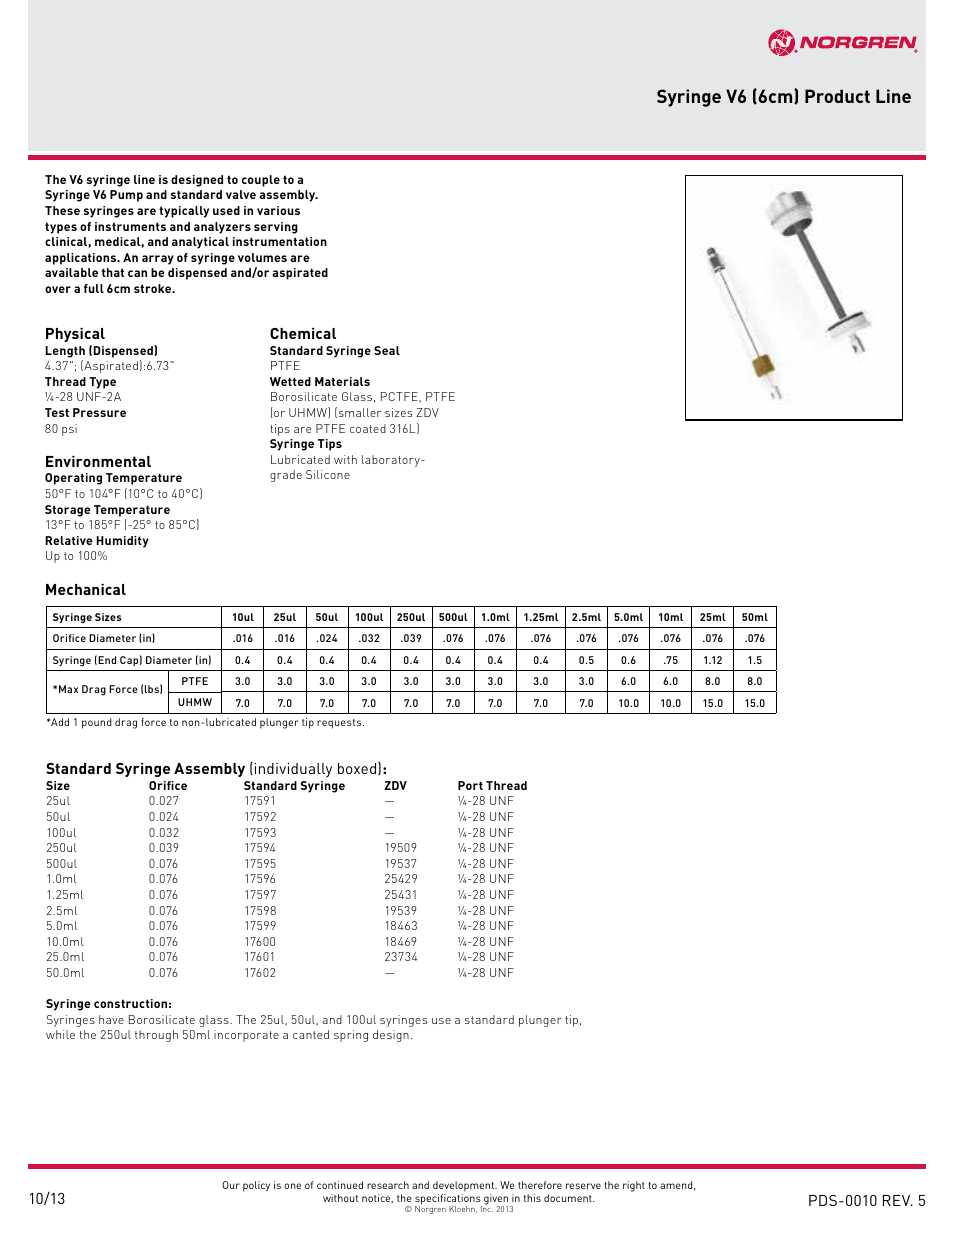 Norgren Syringe V6 User Manual | 2 pages